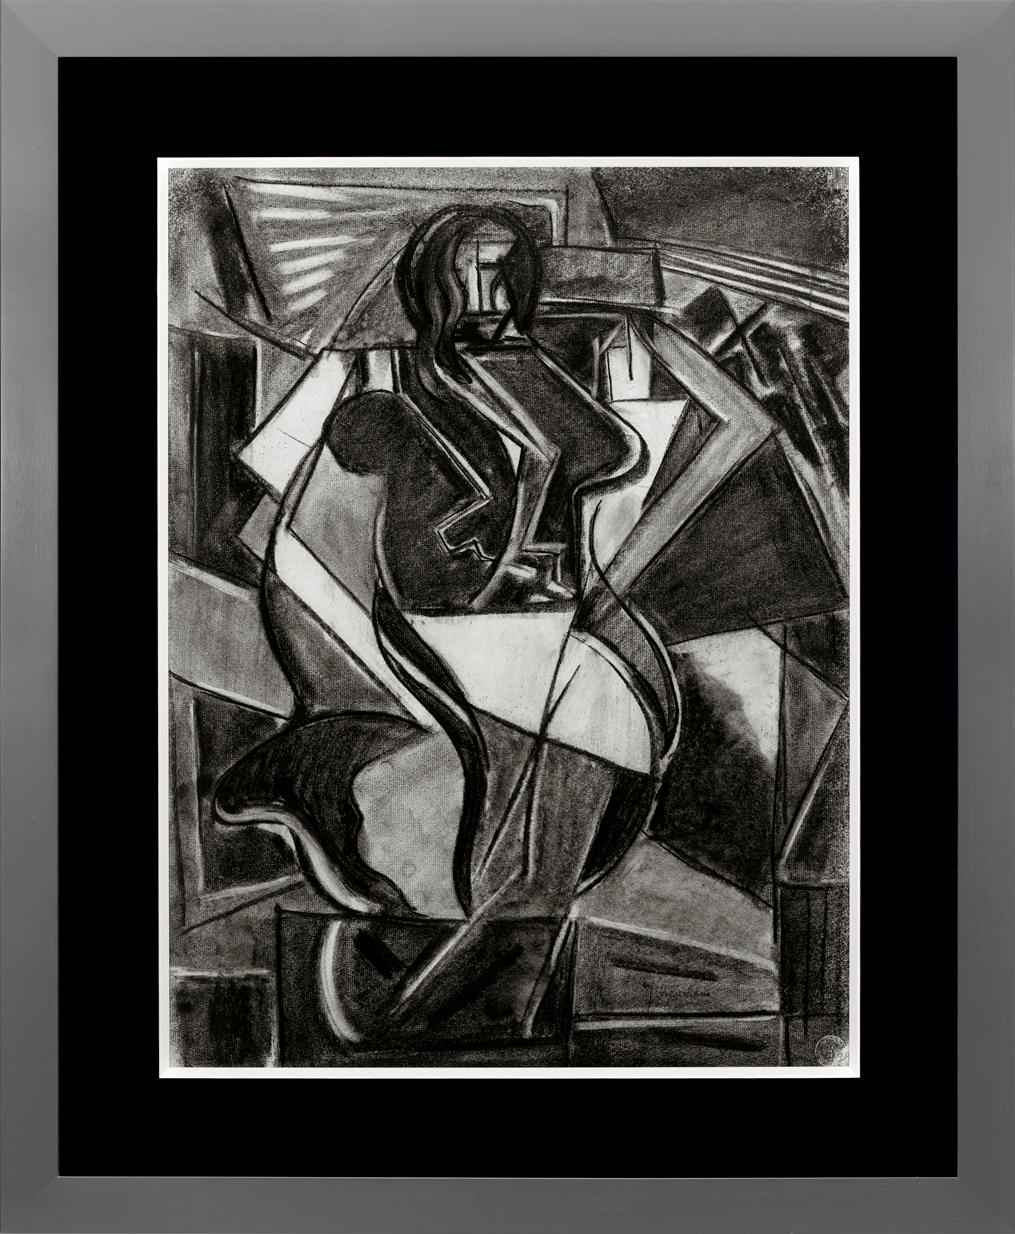 Joseph Meierhans Abstract Drawing - "Modern Woman"